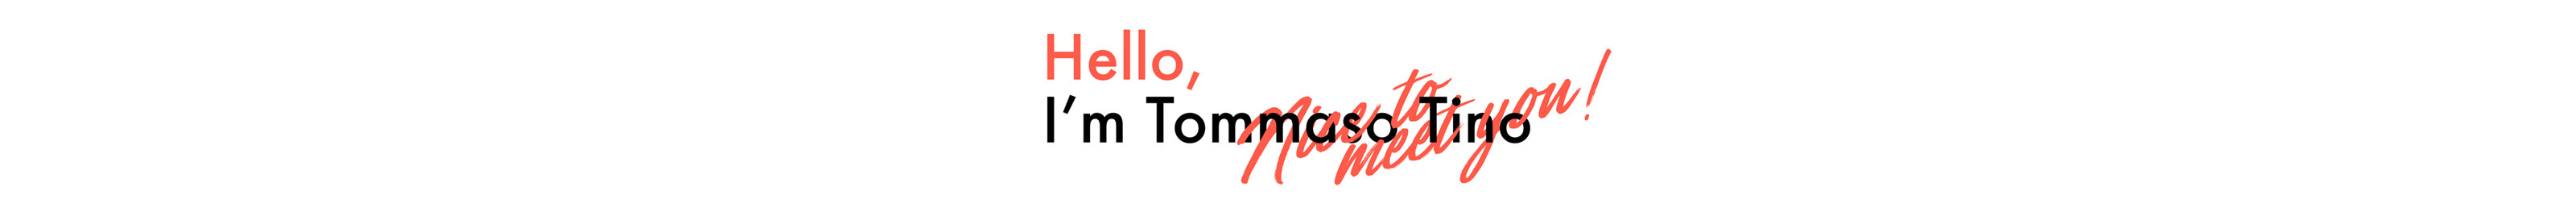 Tommaso Tino's profile banner